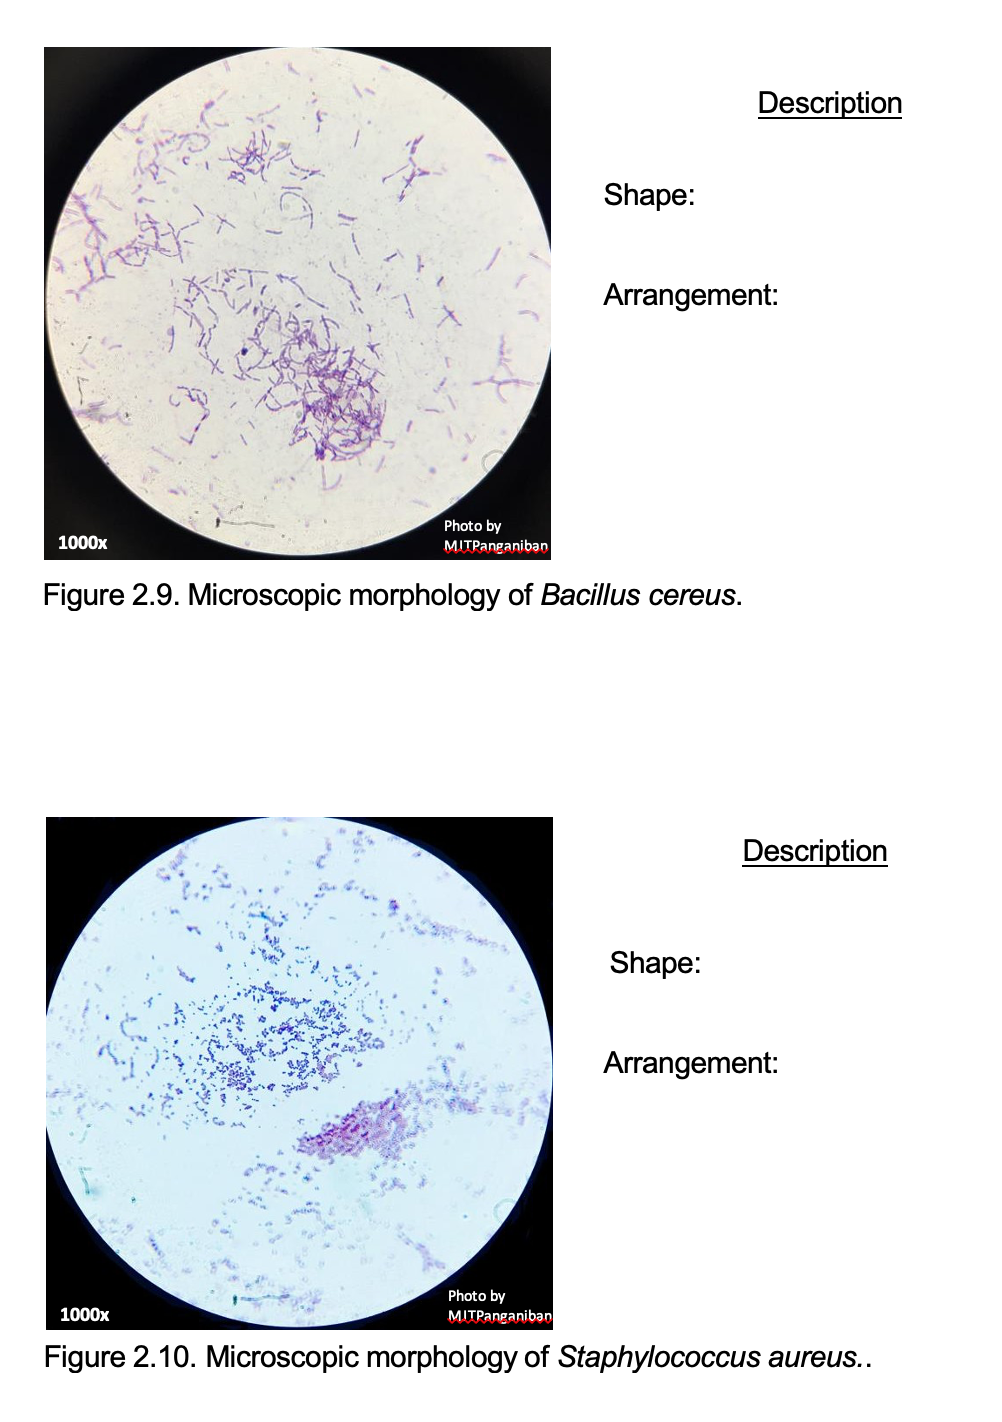 Description
Shape:
Arrangement:
Photo by
1000x
MITPanganiban
Figure 2.9. Microscopic morphology of Bacillus cereus.
Description
Shape:
Arrangement:
Photo by
1000x
MITPanganiban
Figure 2.10. Microscopic morphology of Staphylococcus aureus..
